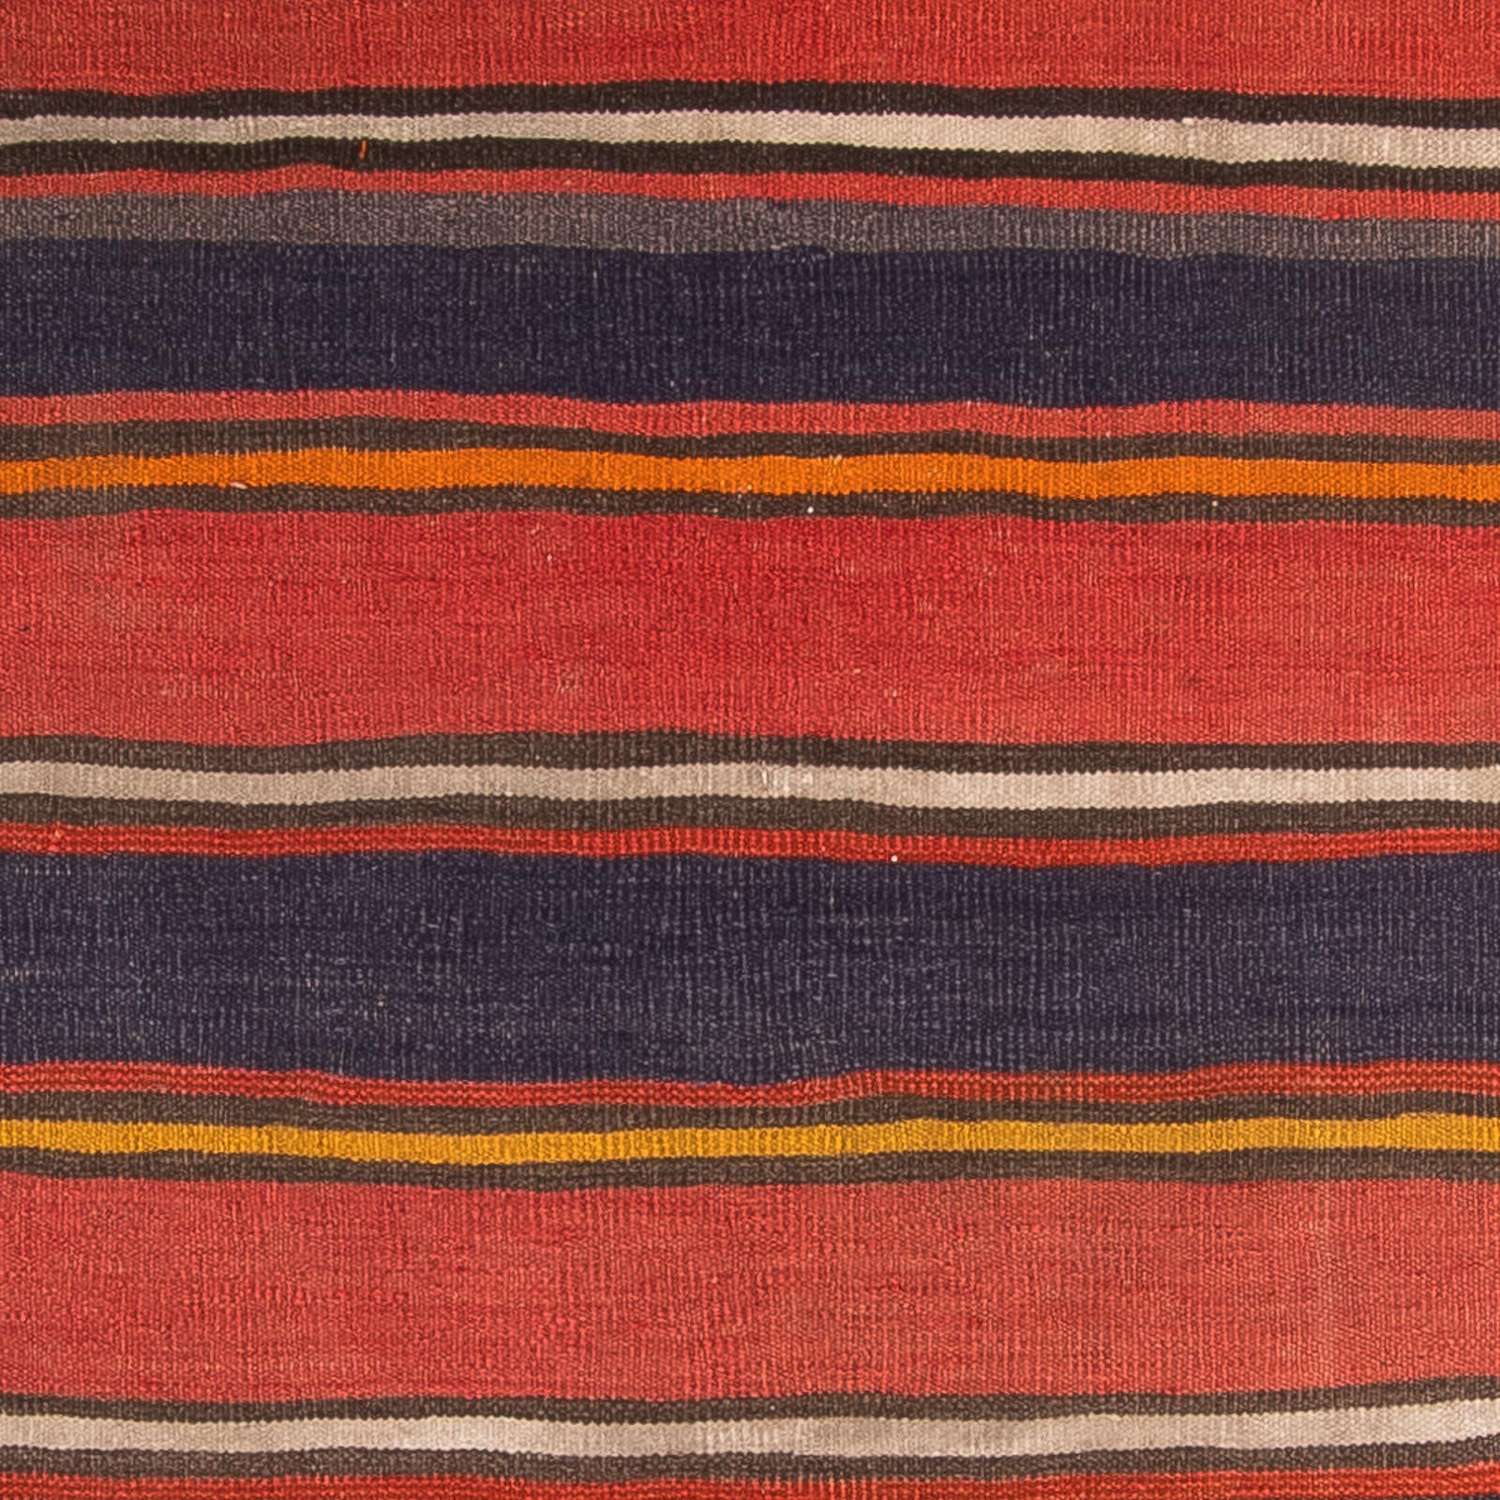 Kelim tapijt - Oud - 205 x 150 cm - veelkleurig